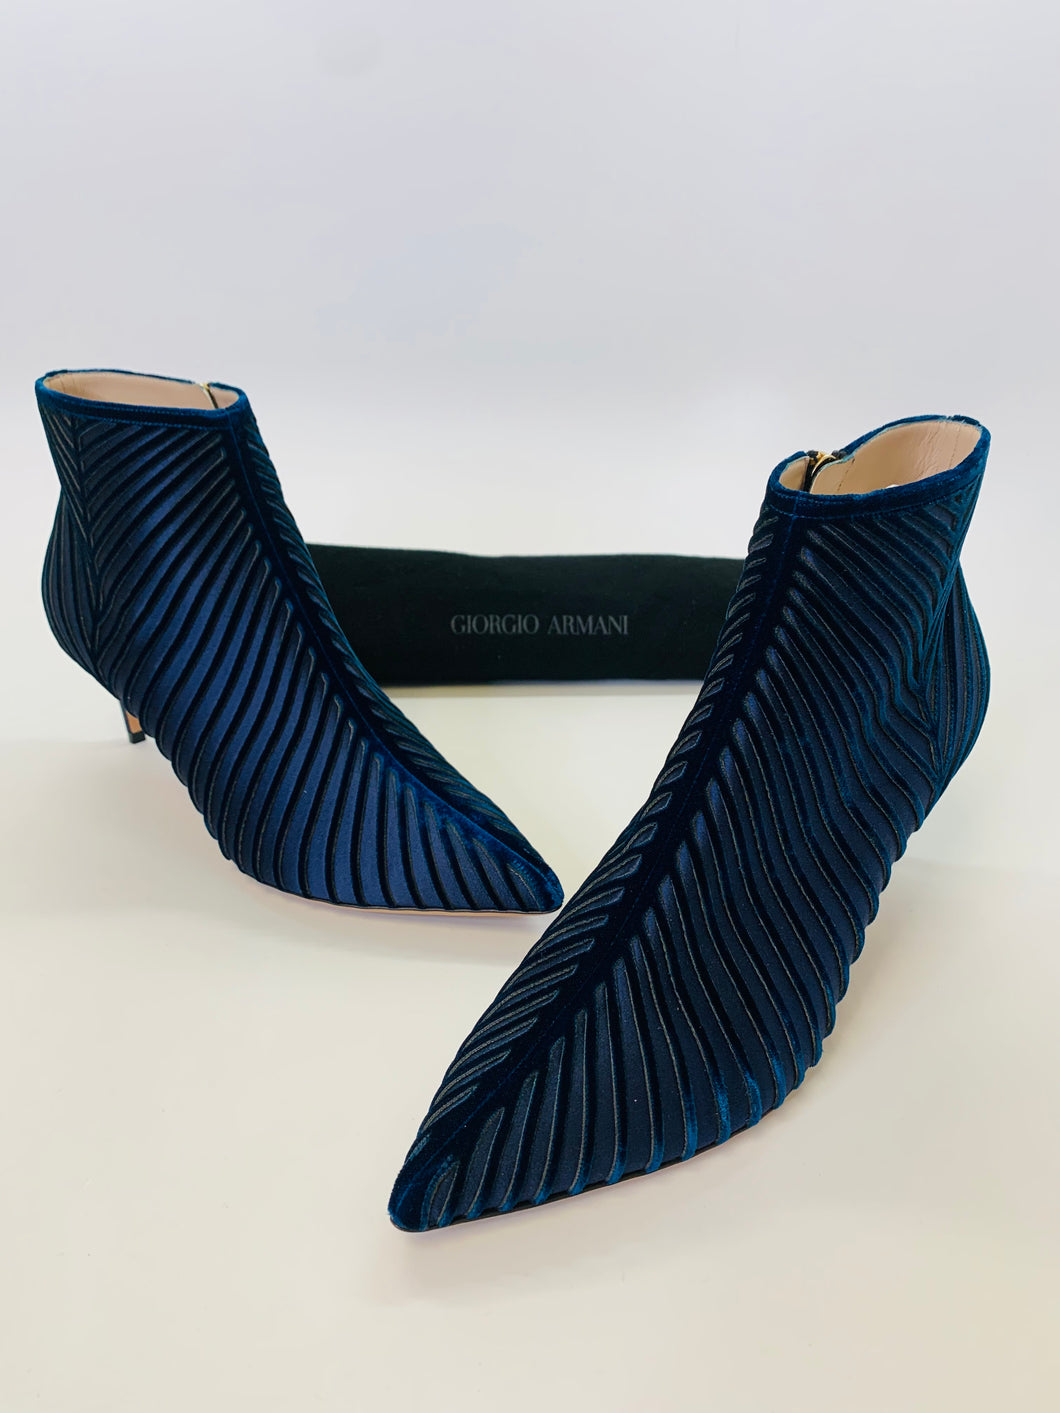 Giorgio Armani Blue Bootie Size 40